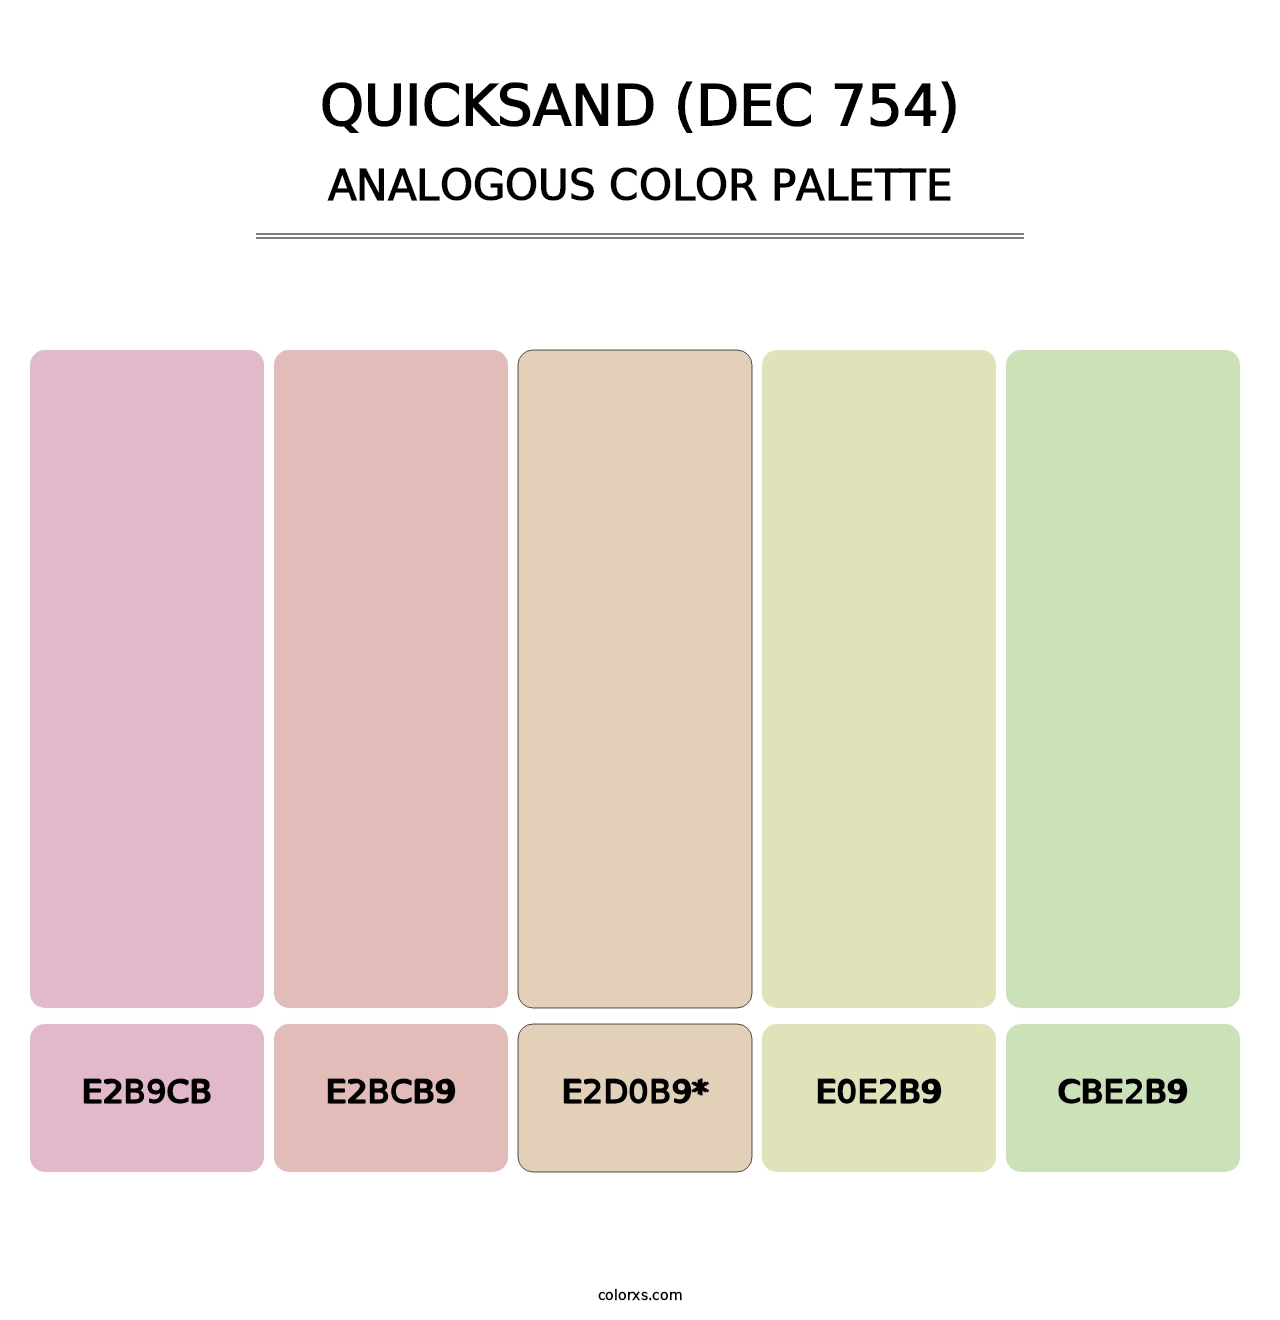 Quicksand (DEC 754) - Analogous Color Palette